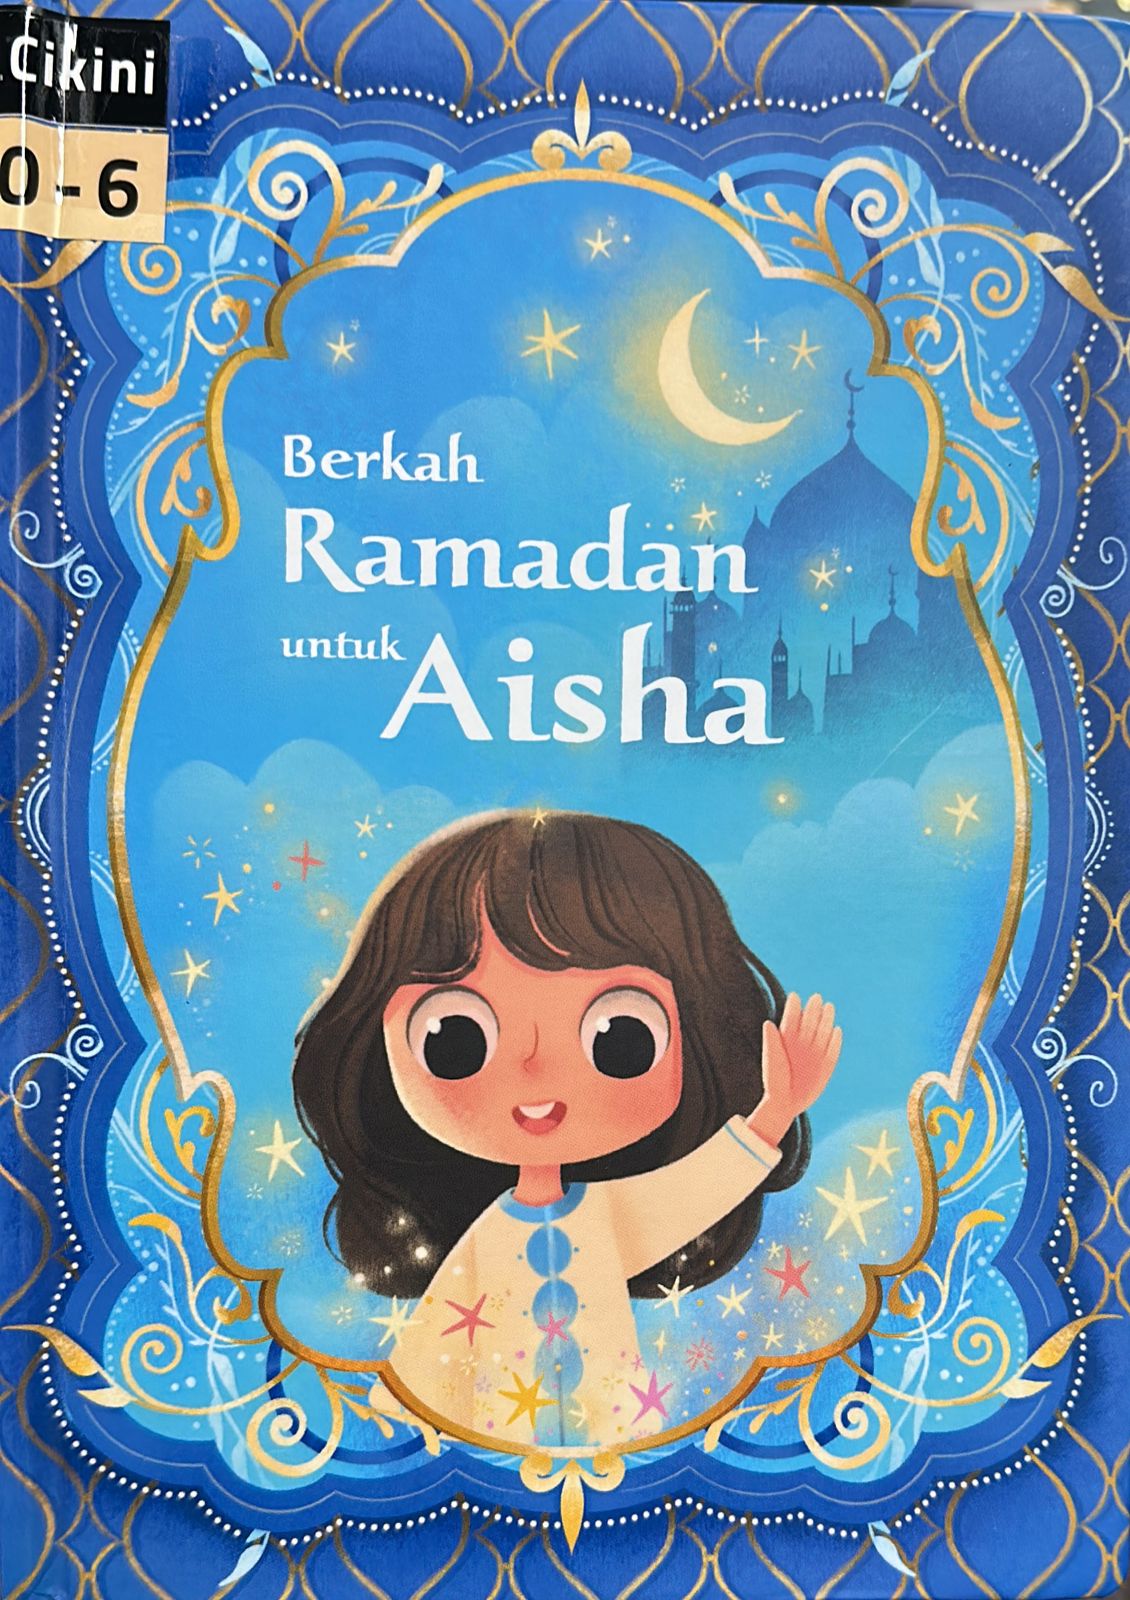 Berkah ramadan untuk Aisha